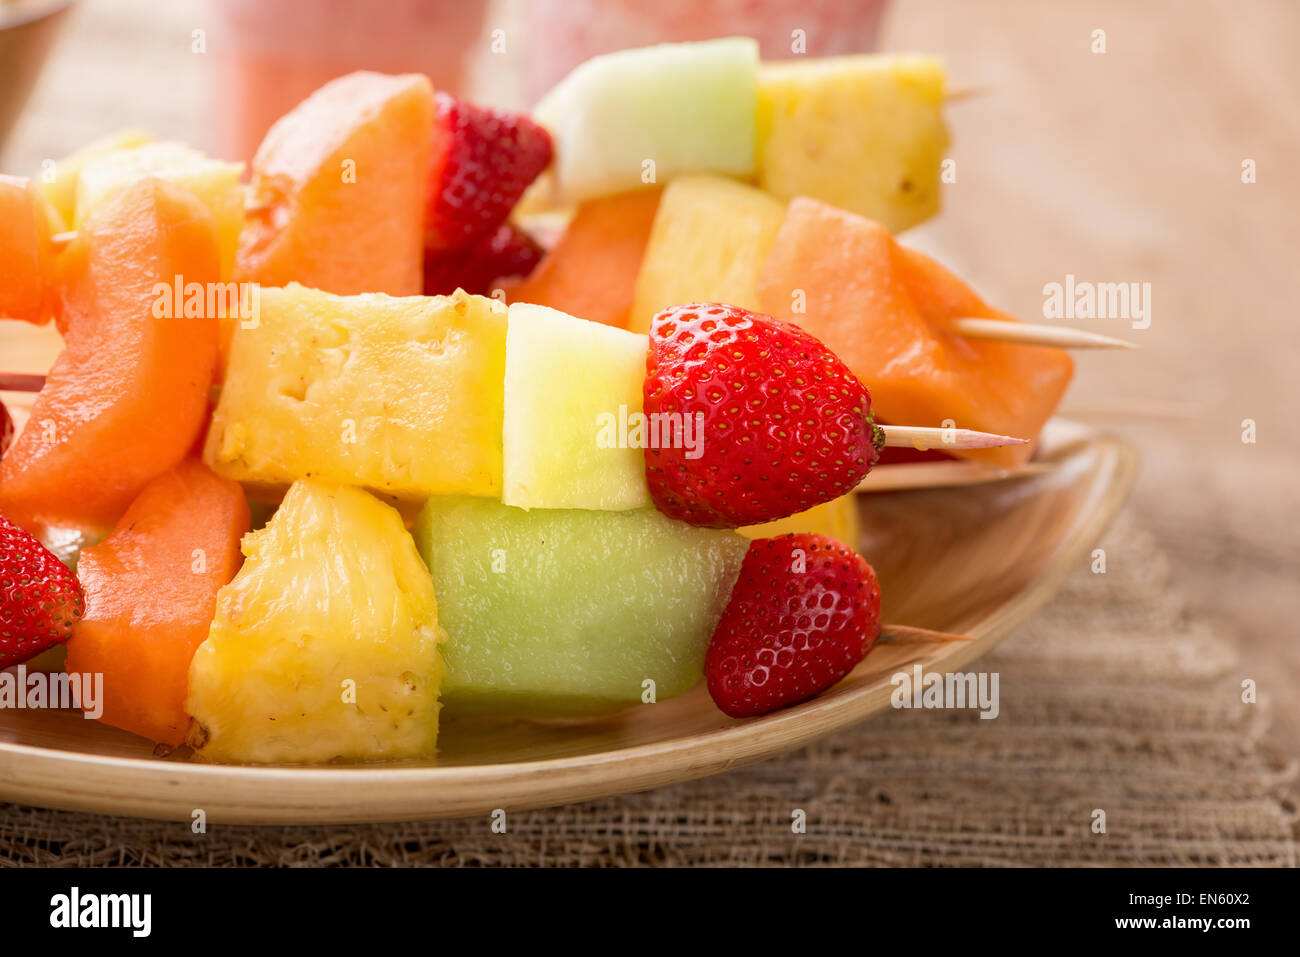 Brochettes de fruits - fruits en brochettes - sur plateau avec smoothies fraises Banque D'Images